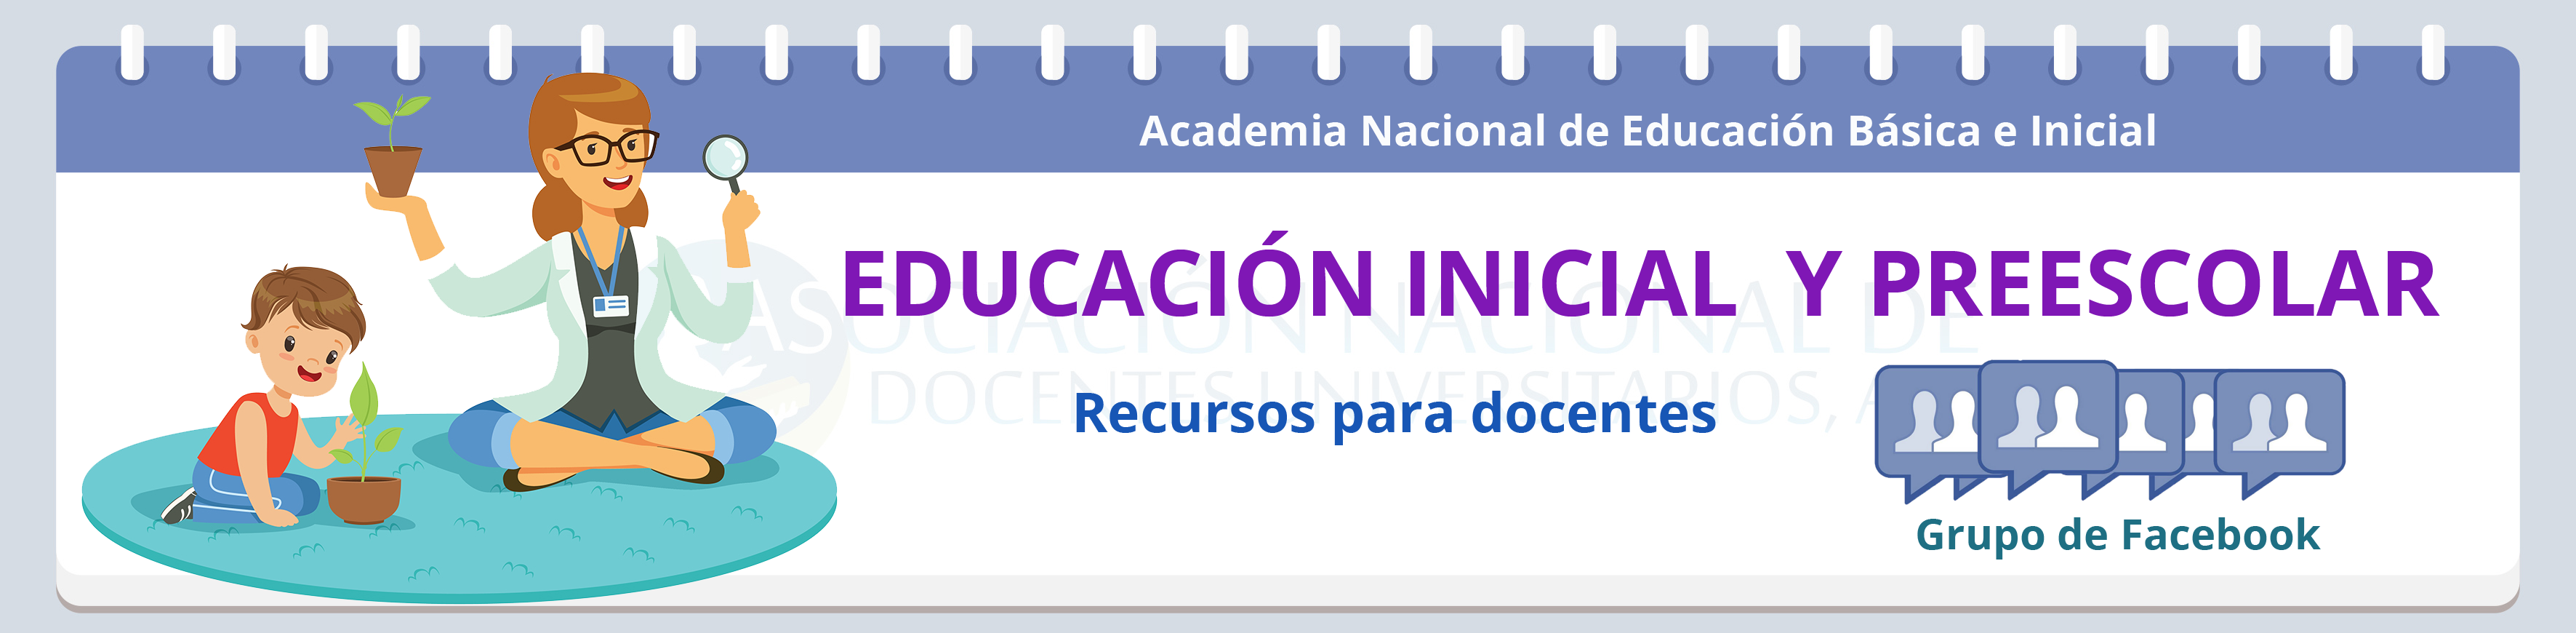 educacion_preescolar.png